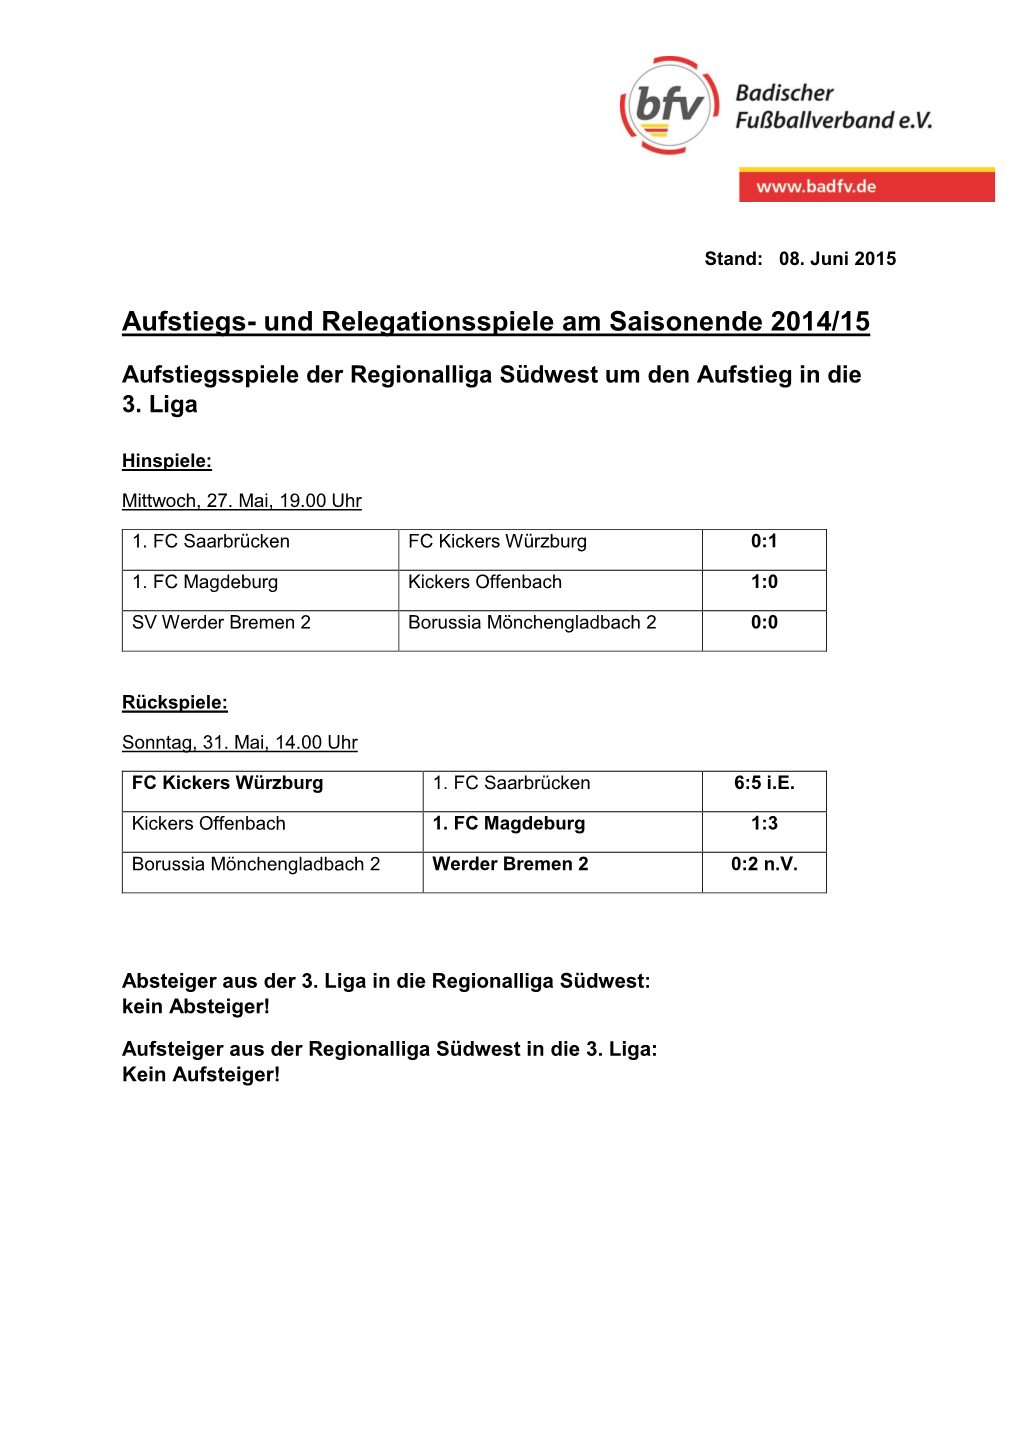 Aufstiegs- Und Relegationsspiele Am Saisonende 2014/15